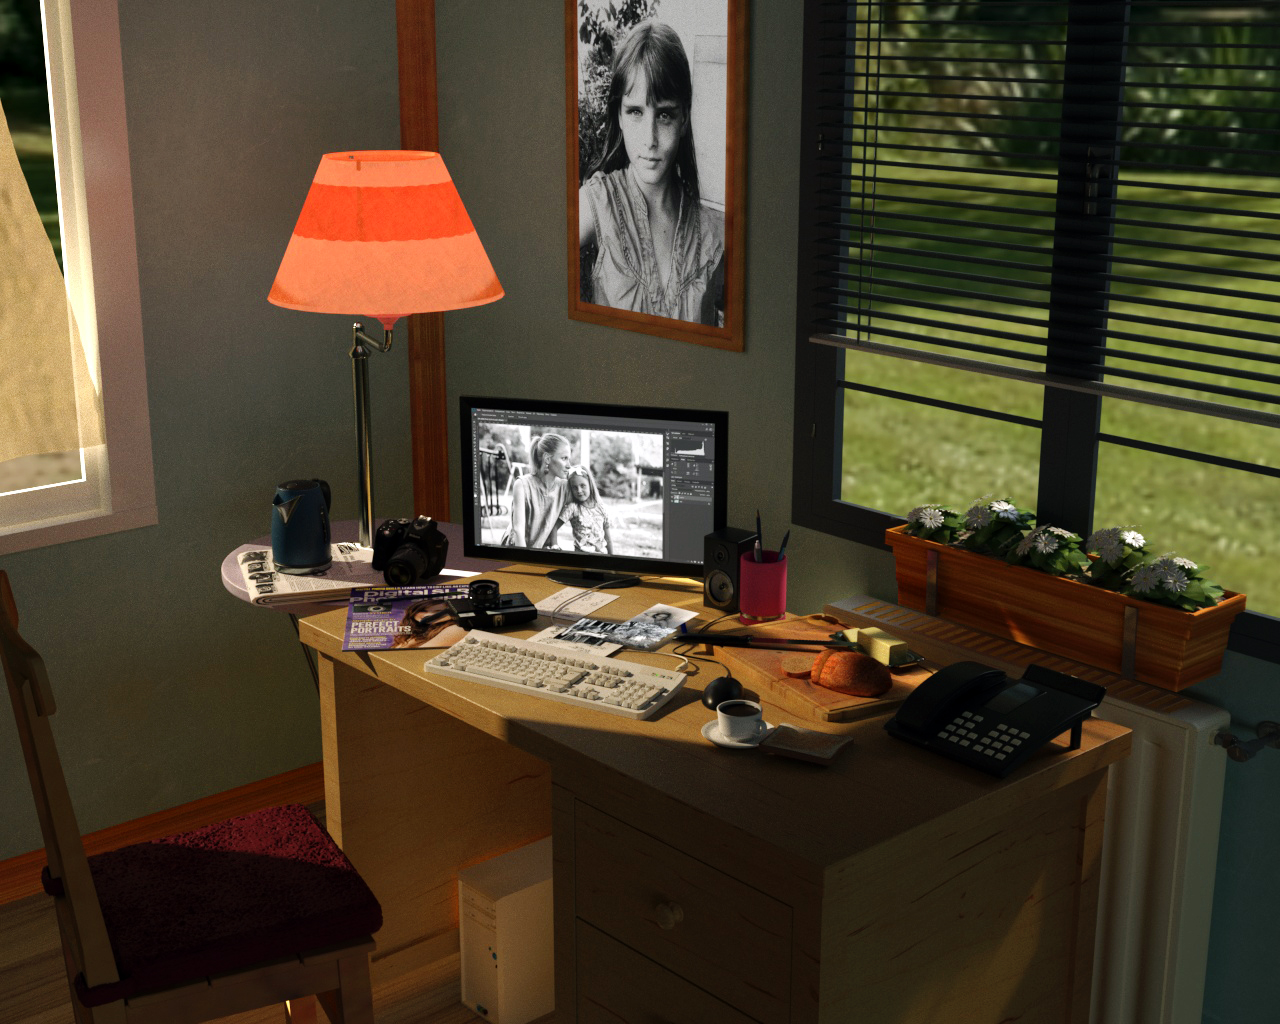 शुरुआती फ़ोटोशॉप Cinema 4d corona render में प्रस्तुत छवि